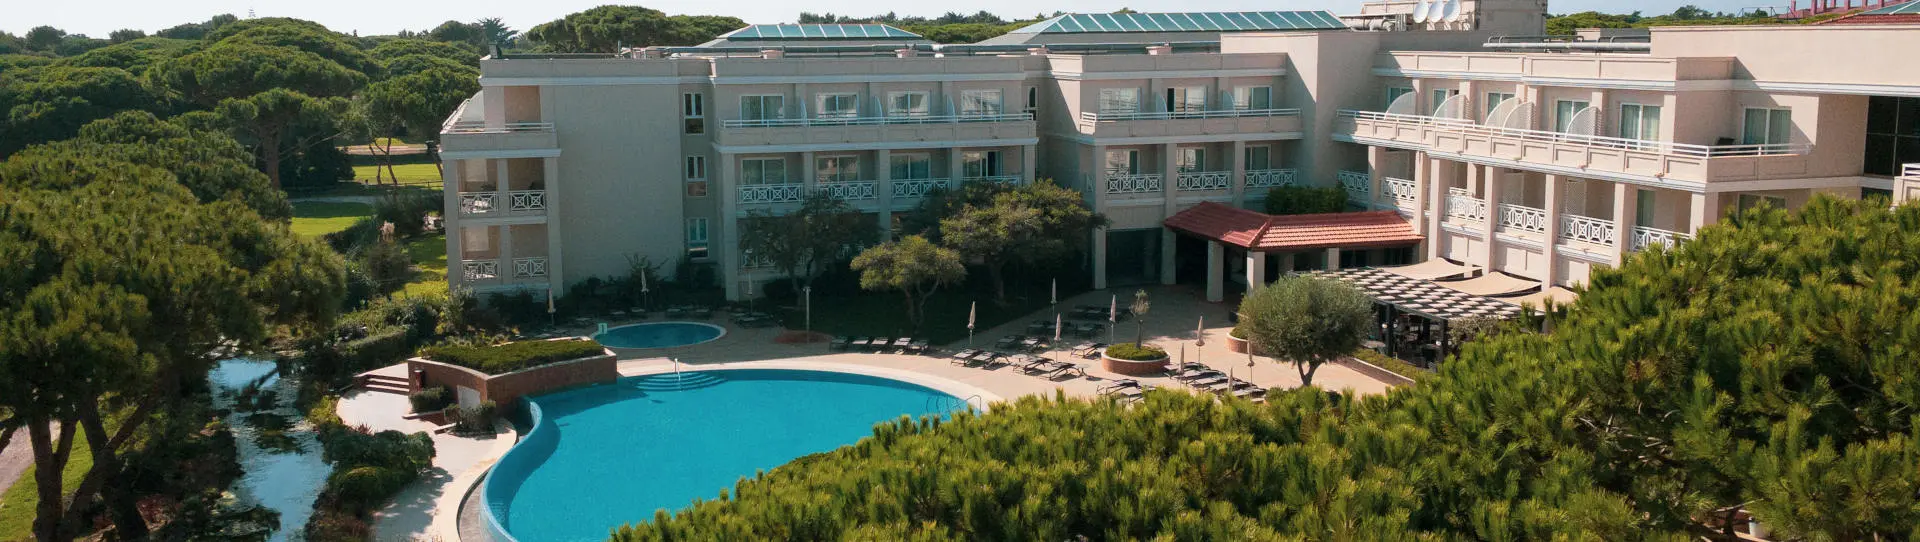 Portugal golf holidays - Onyria Quinta da Marinha Hotel Resort - Photo 3